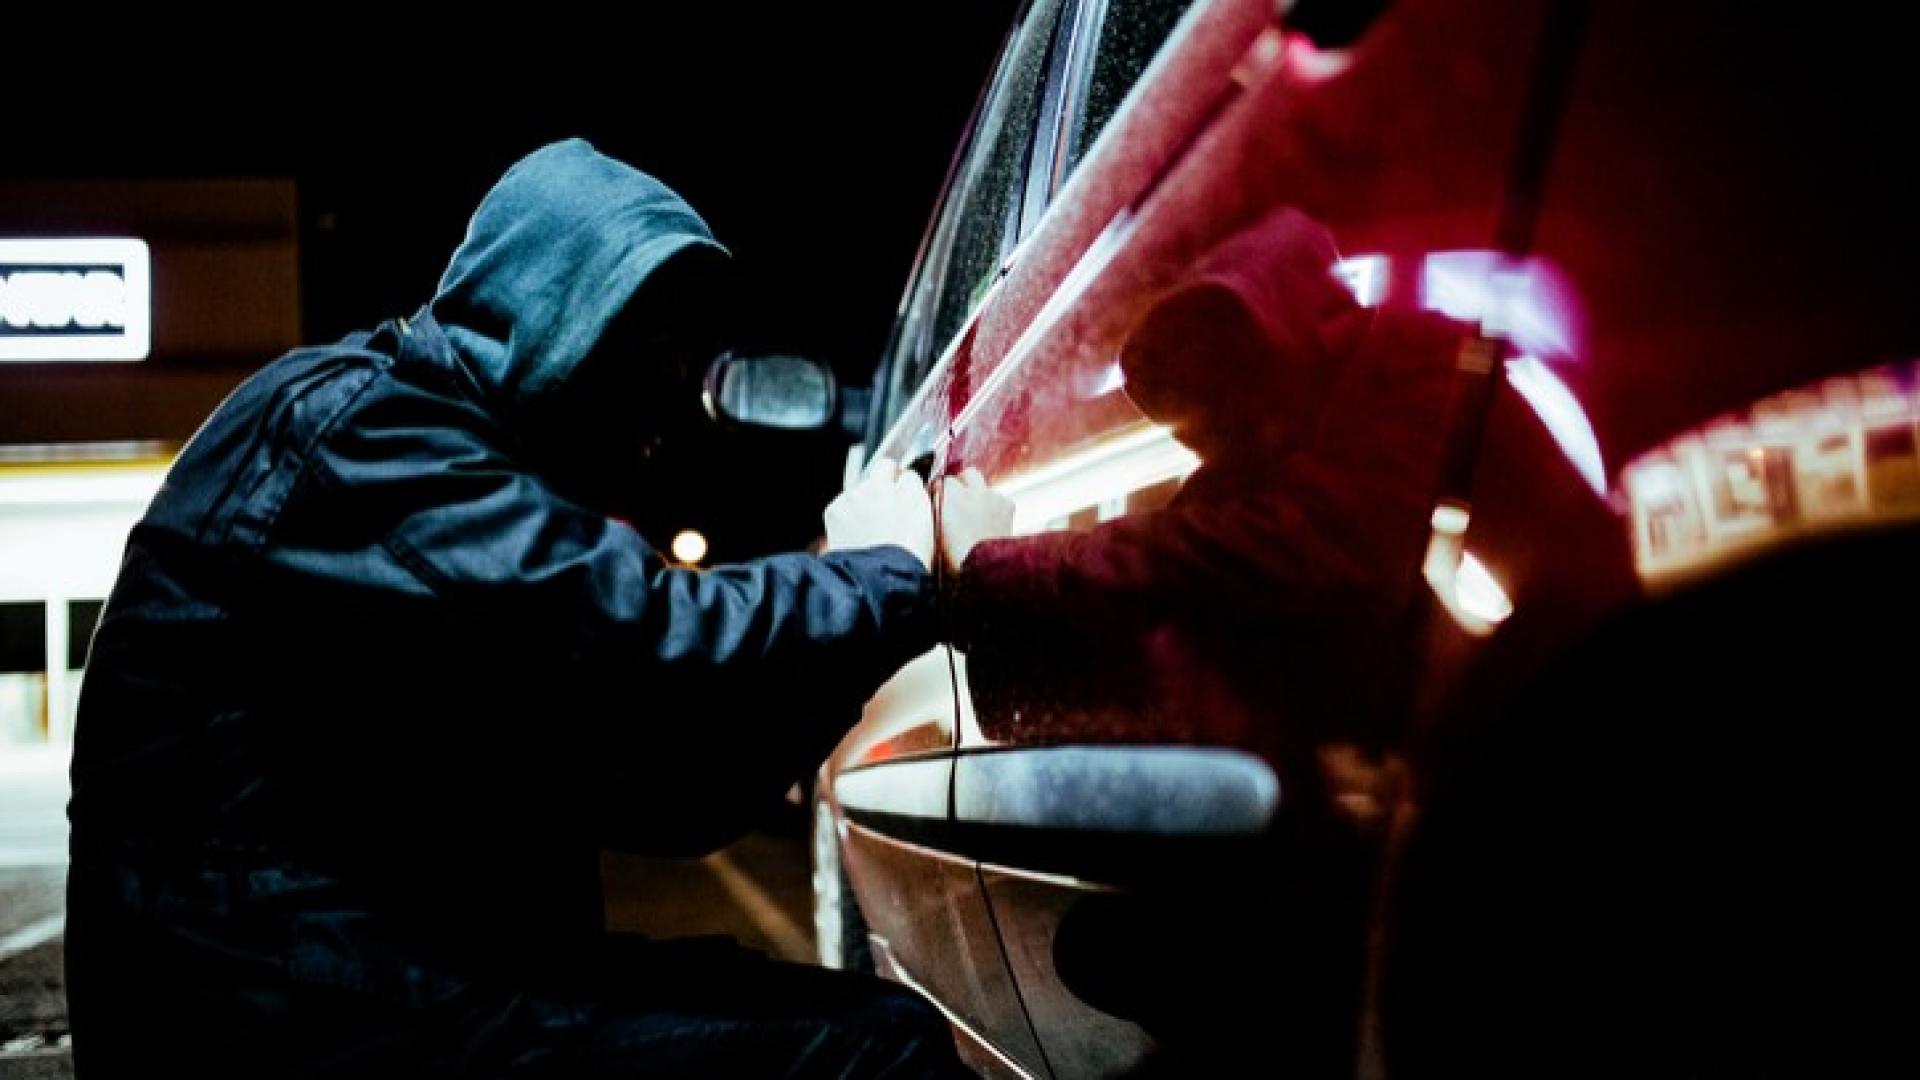 Ein Mann mit Hoodie probiert in der Nacht in ein rotes Auto einzubrechen